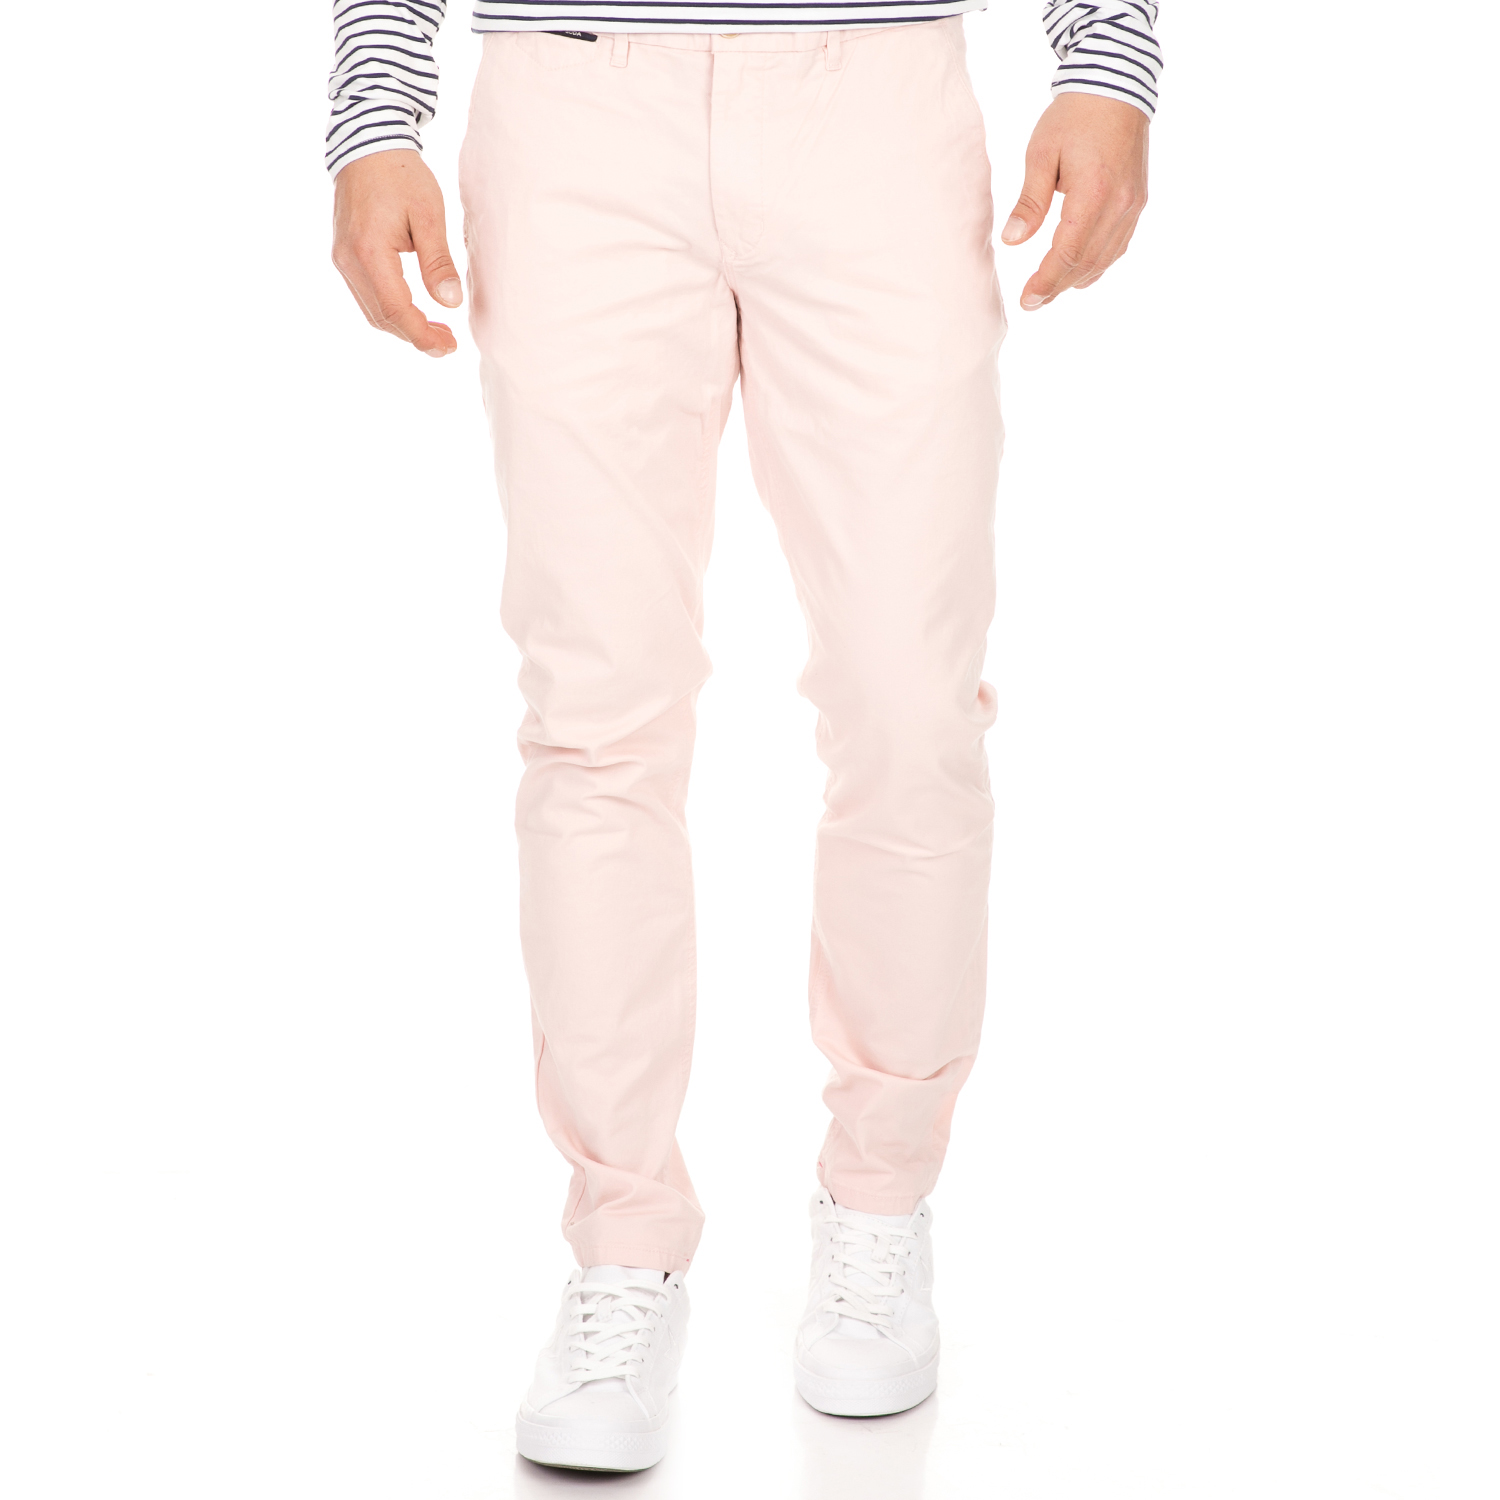 Ανδρικά/Ρούχα/Παντελόνια/Chinos SCOTCH & SODA - Ανδρικό chino παντελόνι SCOTCH & SODA MOTT Classic ροζ